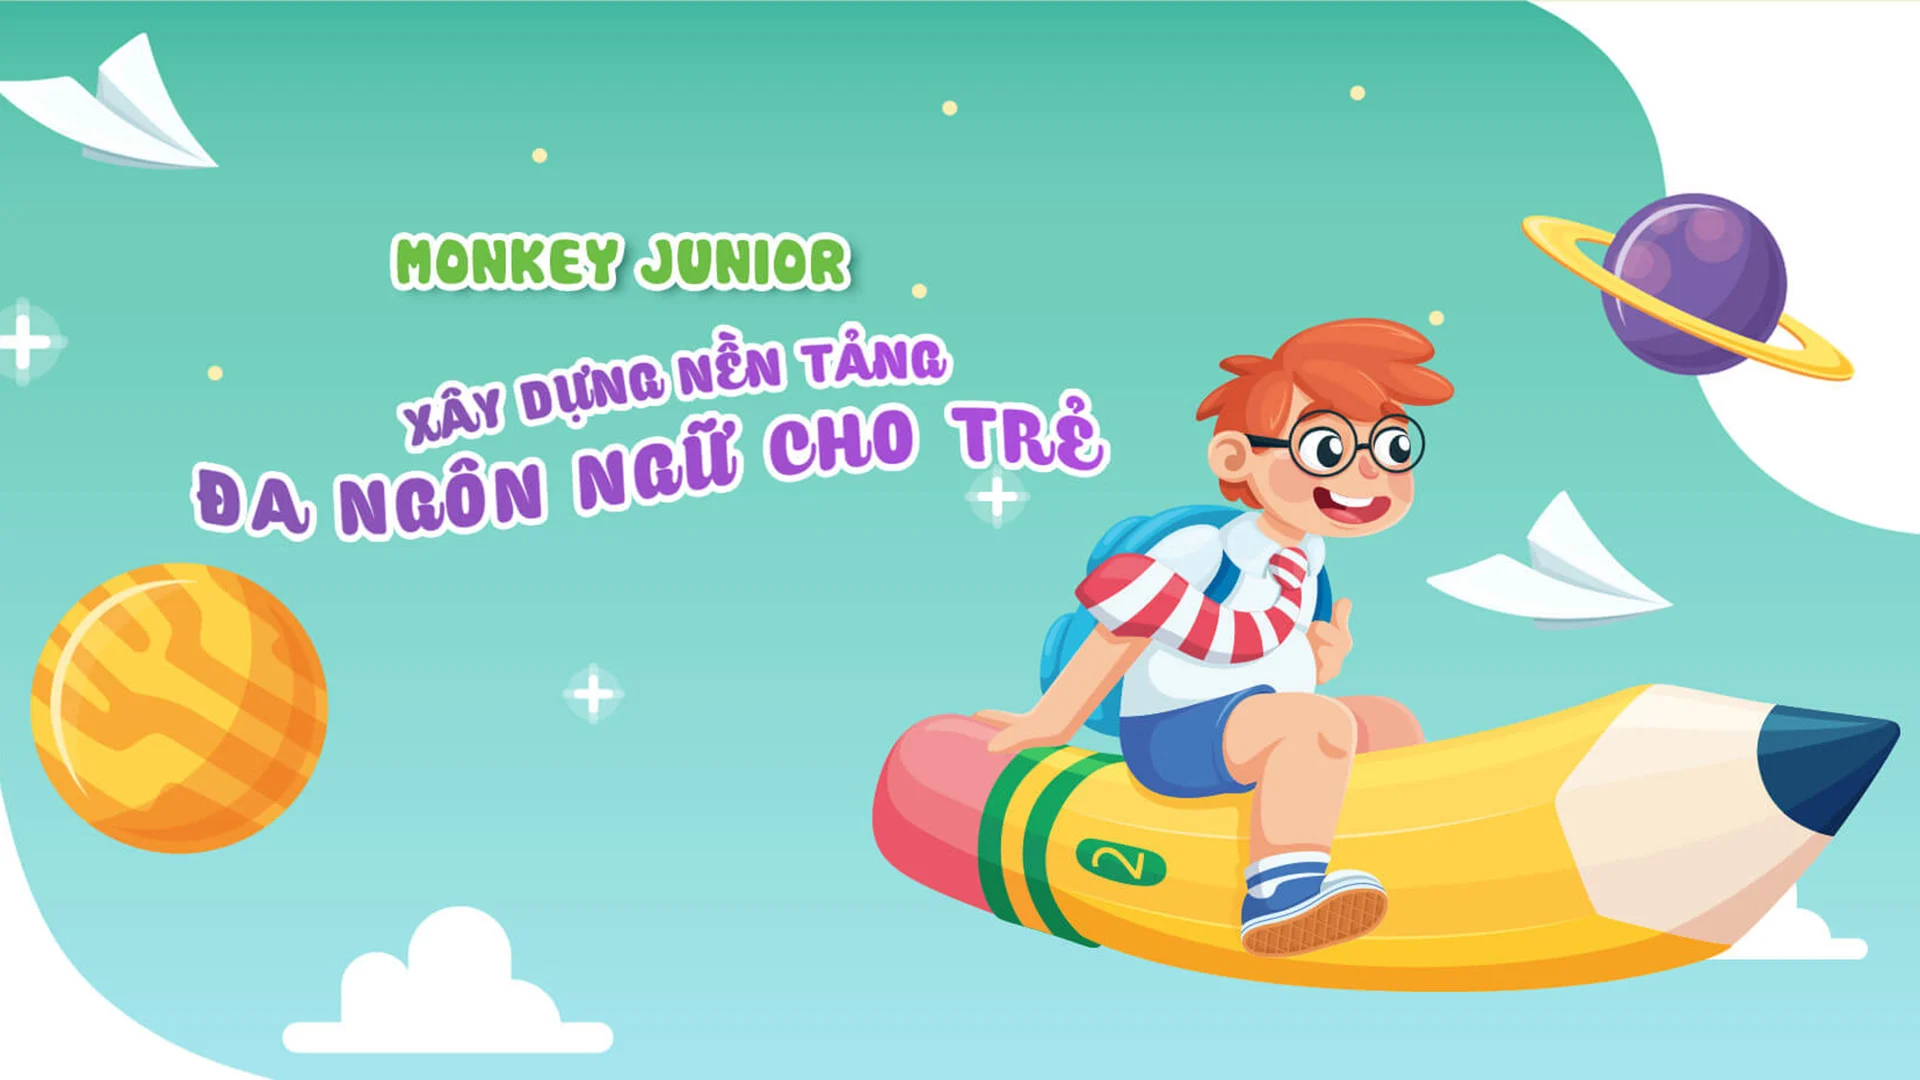 Quảng cáo khuyến mãi Monkey Junior